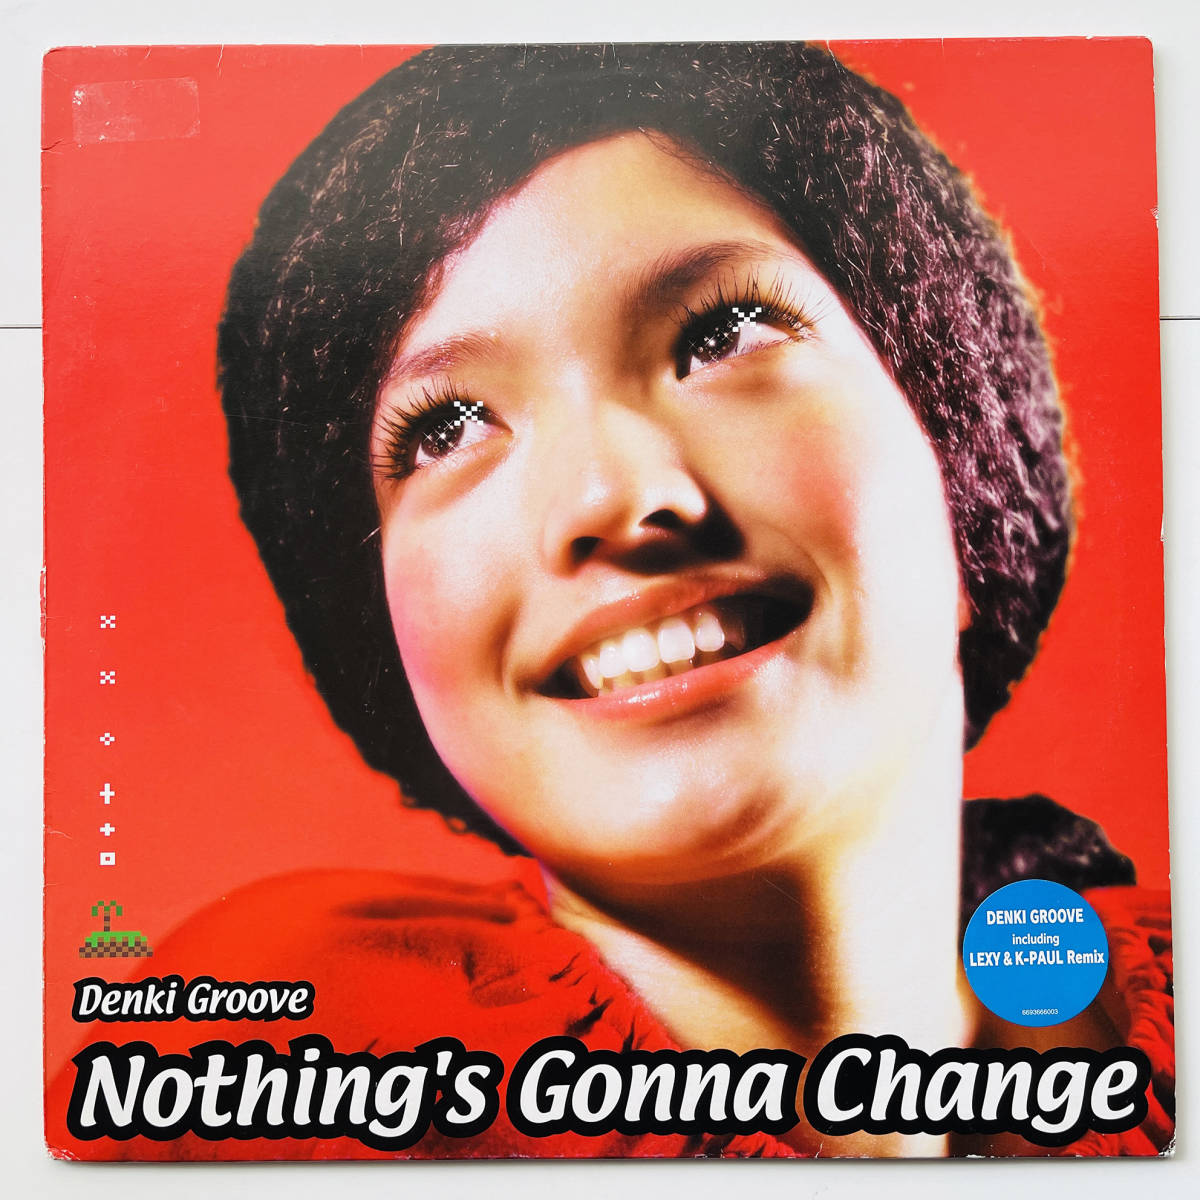 レア盤 12インチレコード〔 電気グルーヴ Nothing's Gonna Change 〕石野卓球 ピエール瀧 Denki Groove Lexy & K-Paul POPSODA_画像1